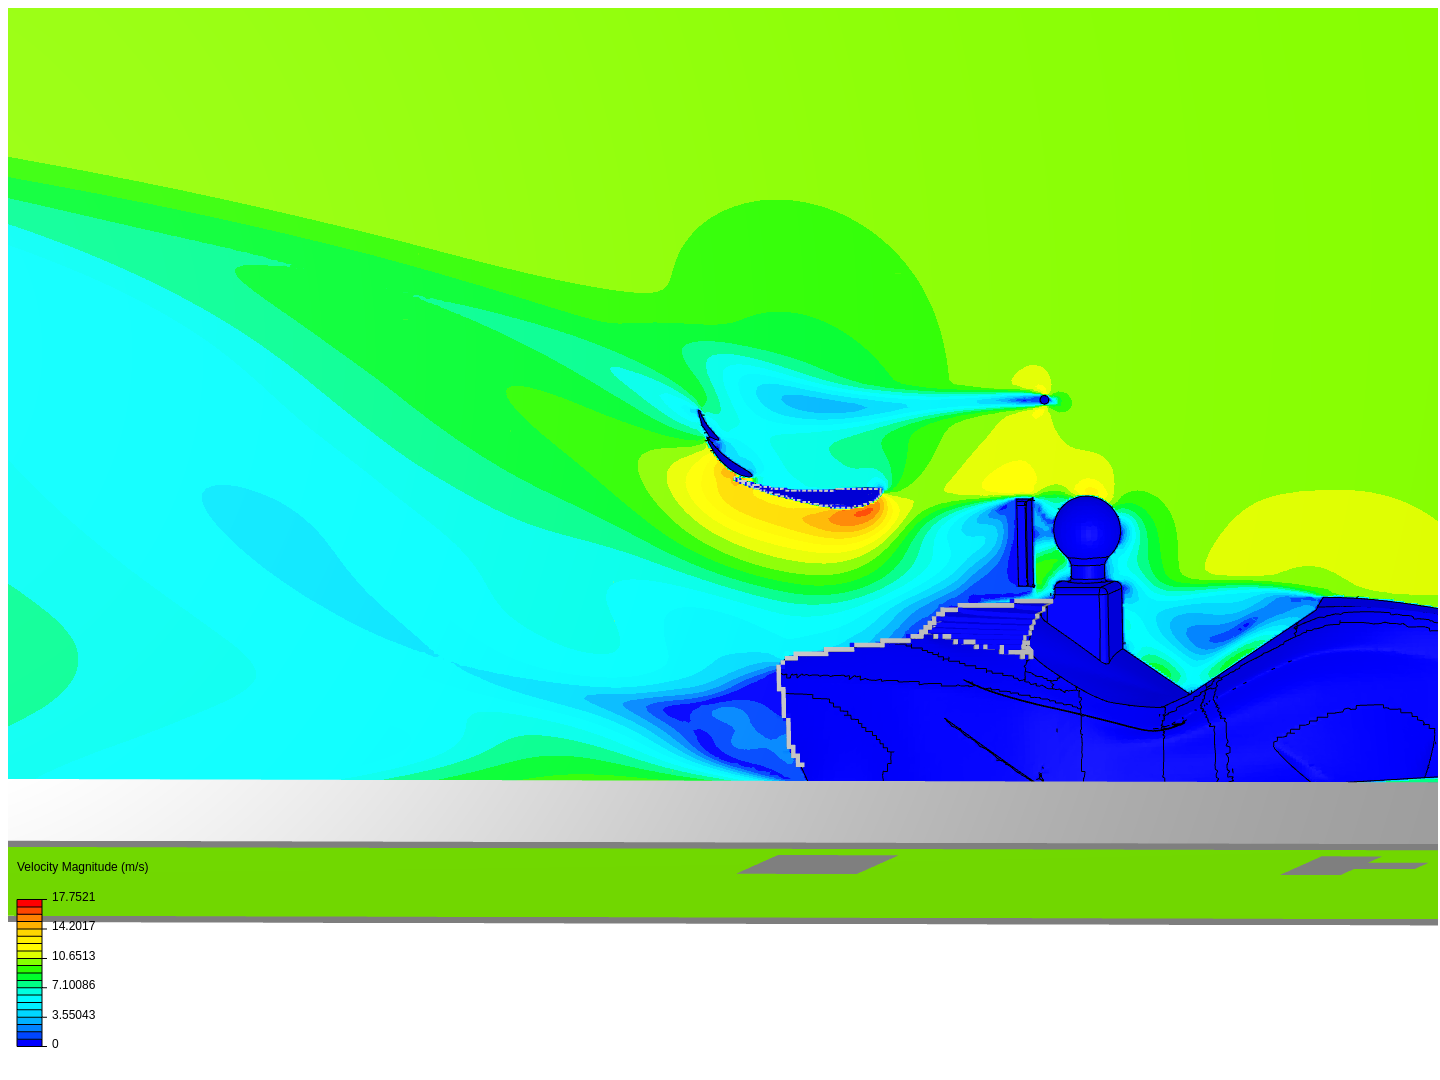 E12 Full car simulation image